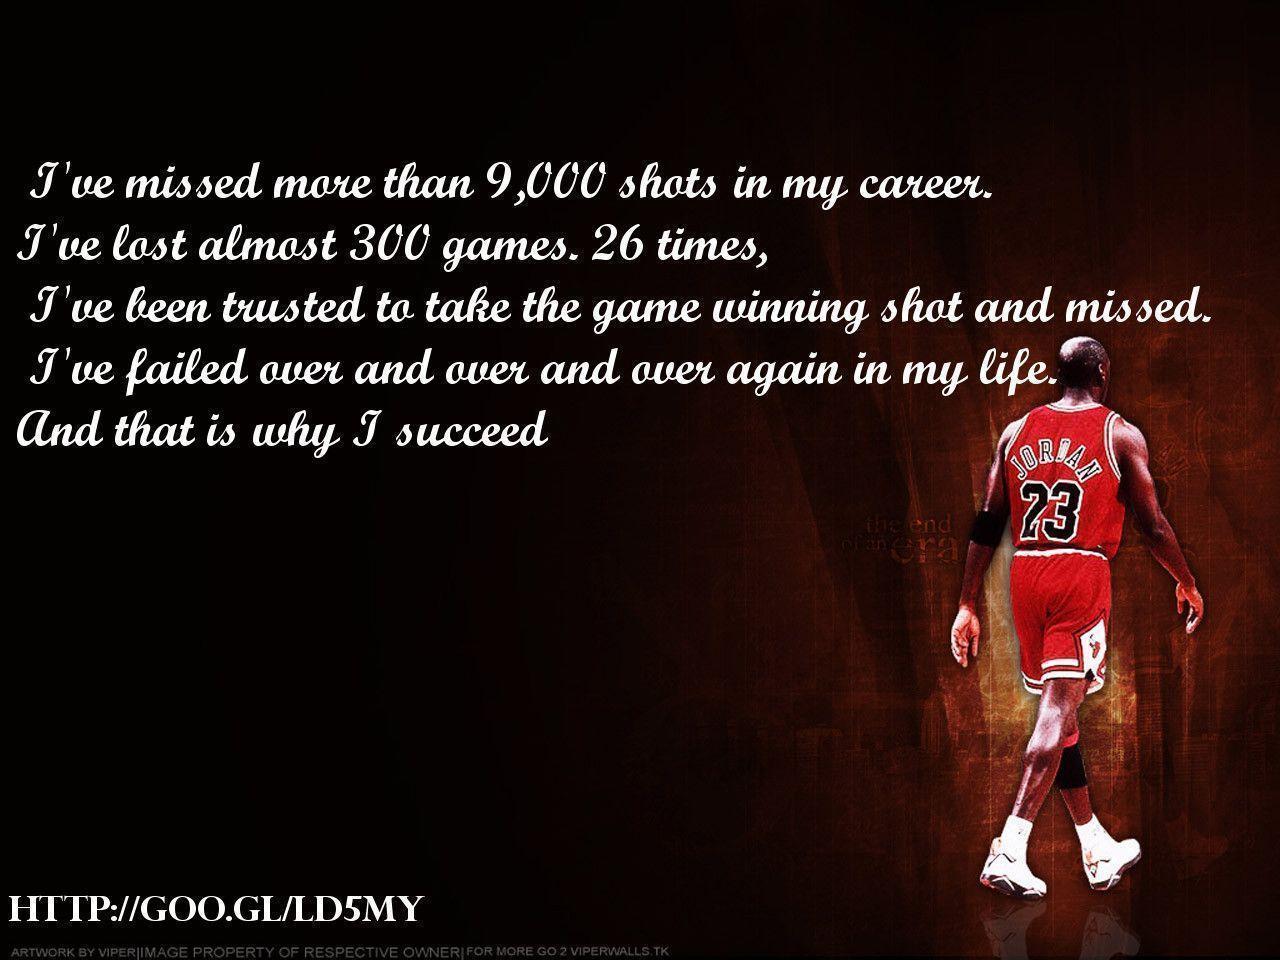 Michael Jordan Quotes 58 117536 Image HD Wallpaper. Wallfoy.com